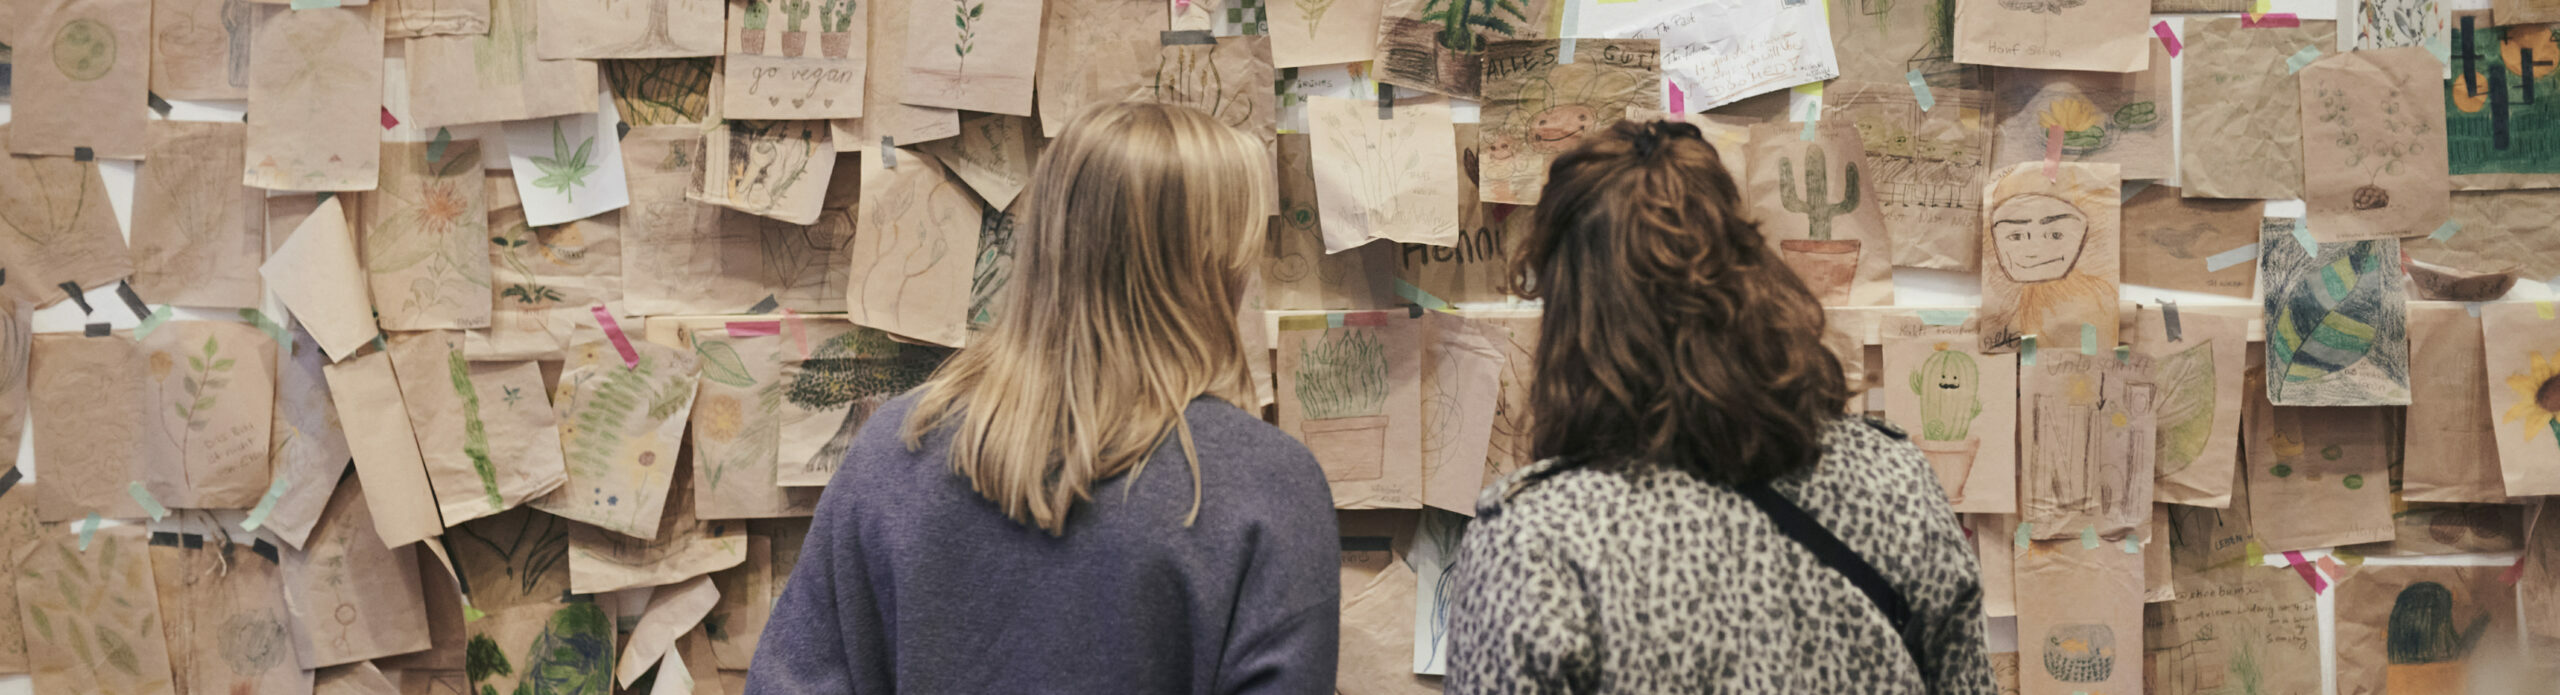 Zwei Frauen betrachten eine Wand mit selbstgemalten Bildern aus einer Ausstellung